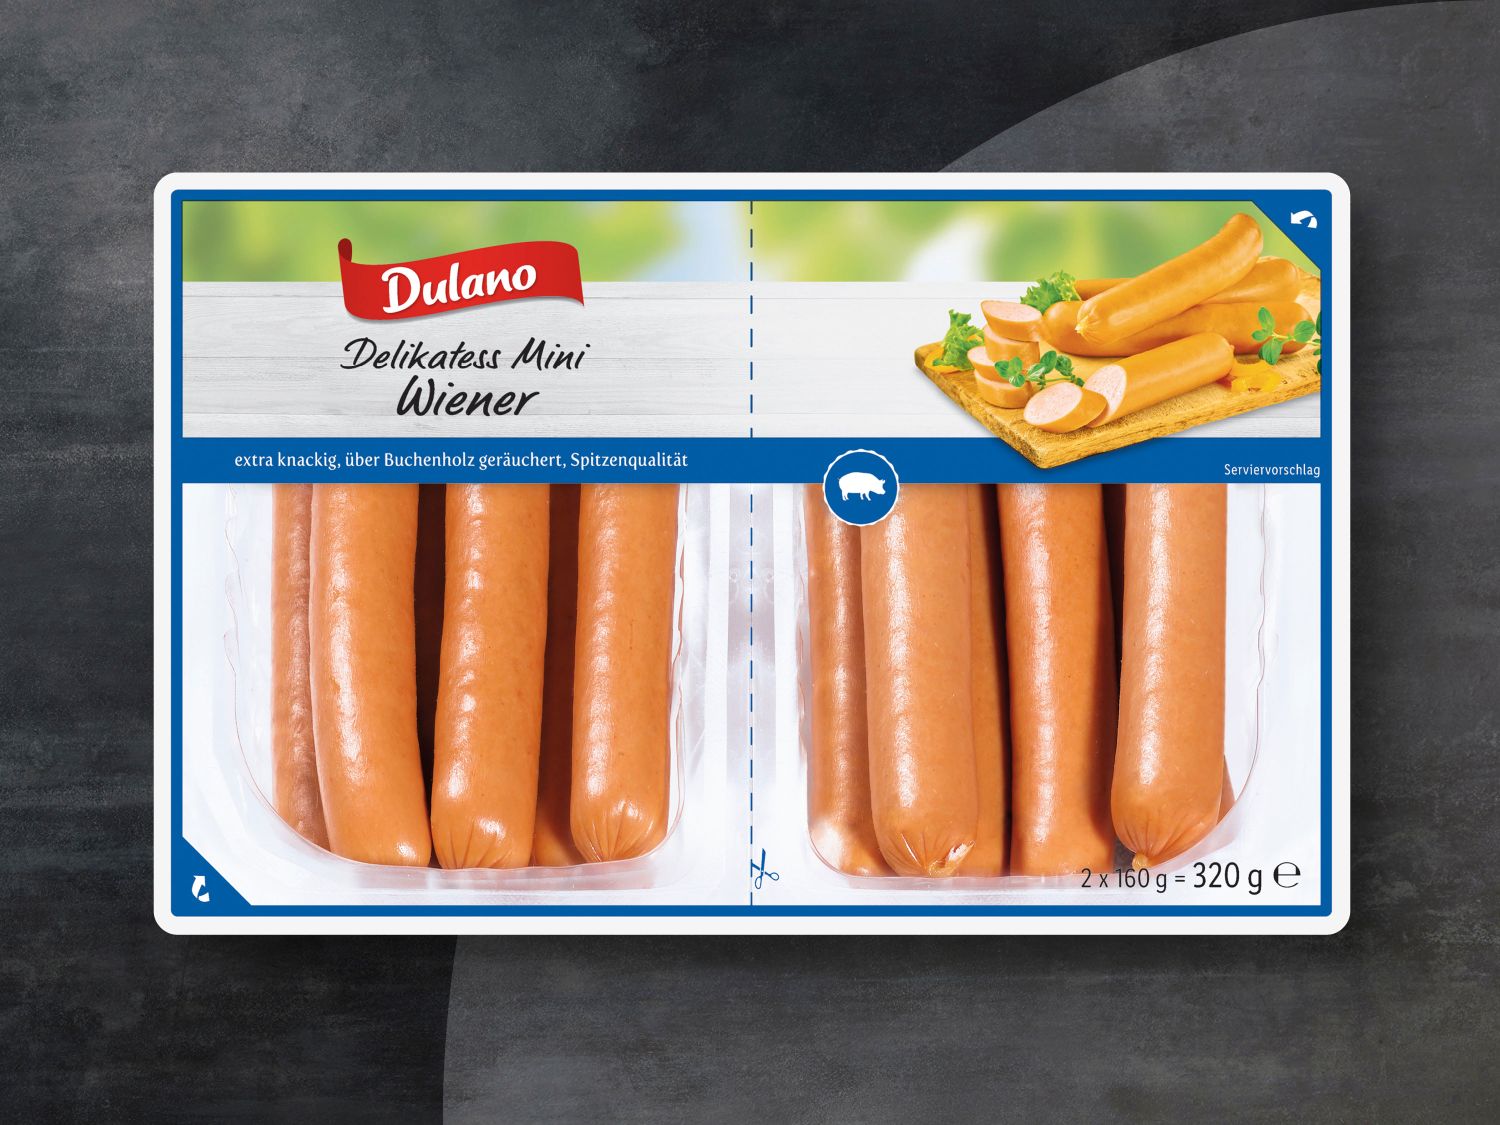 Dulano Mini-Wiener - Lidl Deutschland